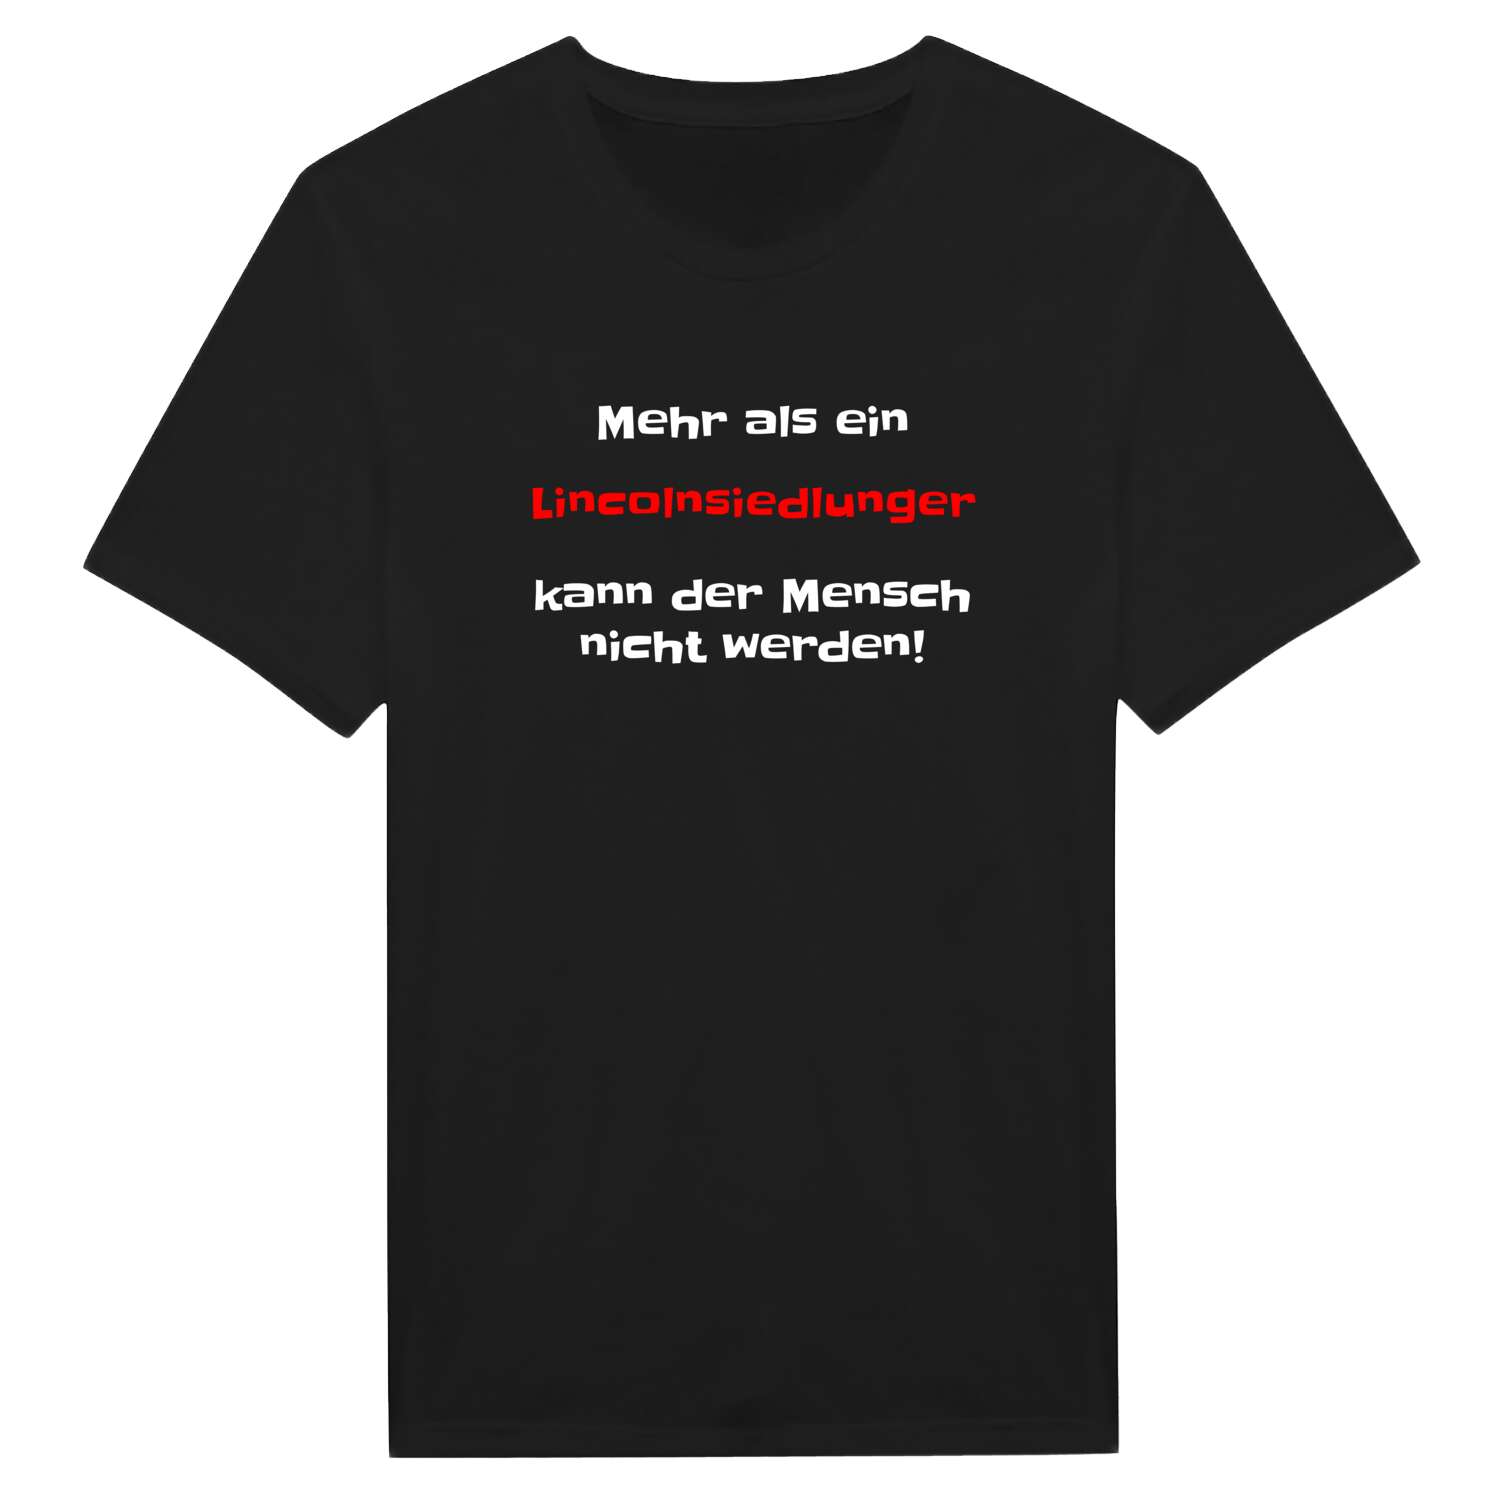 Lincolnsiedlung T-Shirt »Mehr als ein«